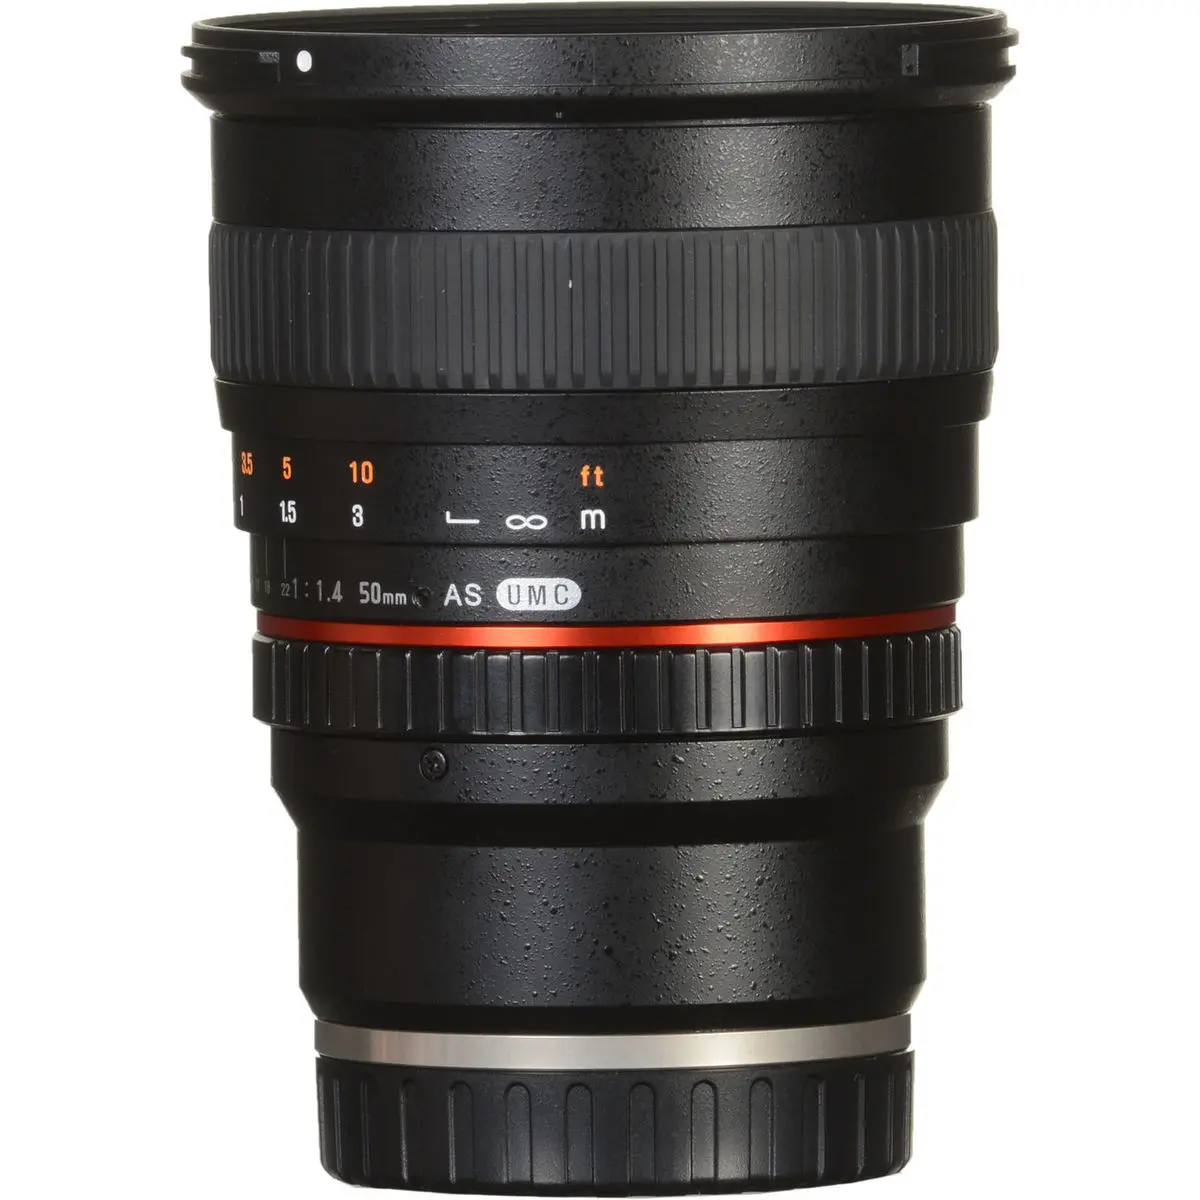 5. Samyang 50 mm f/1.4 AS UMC (Sony E) Lens